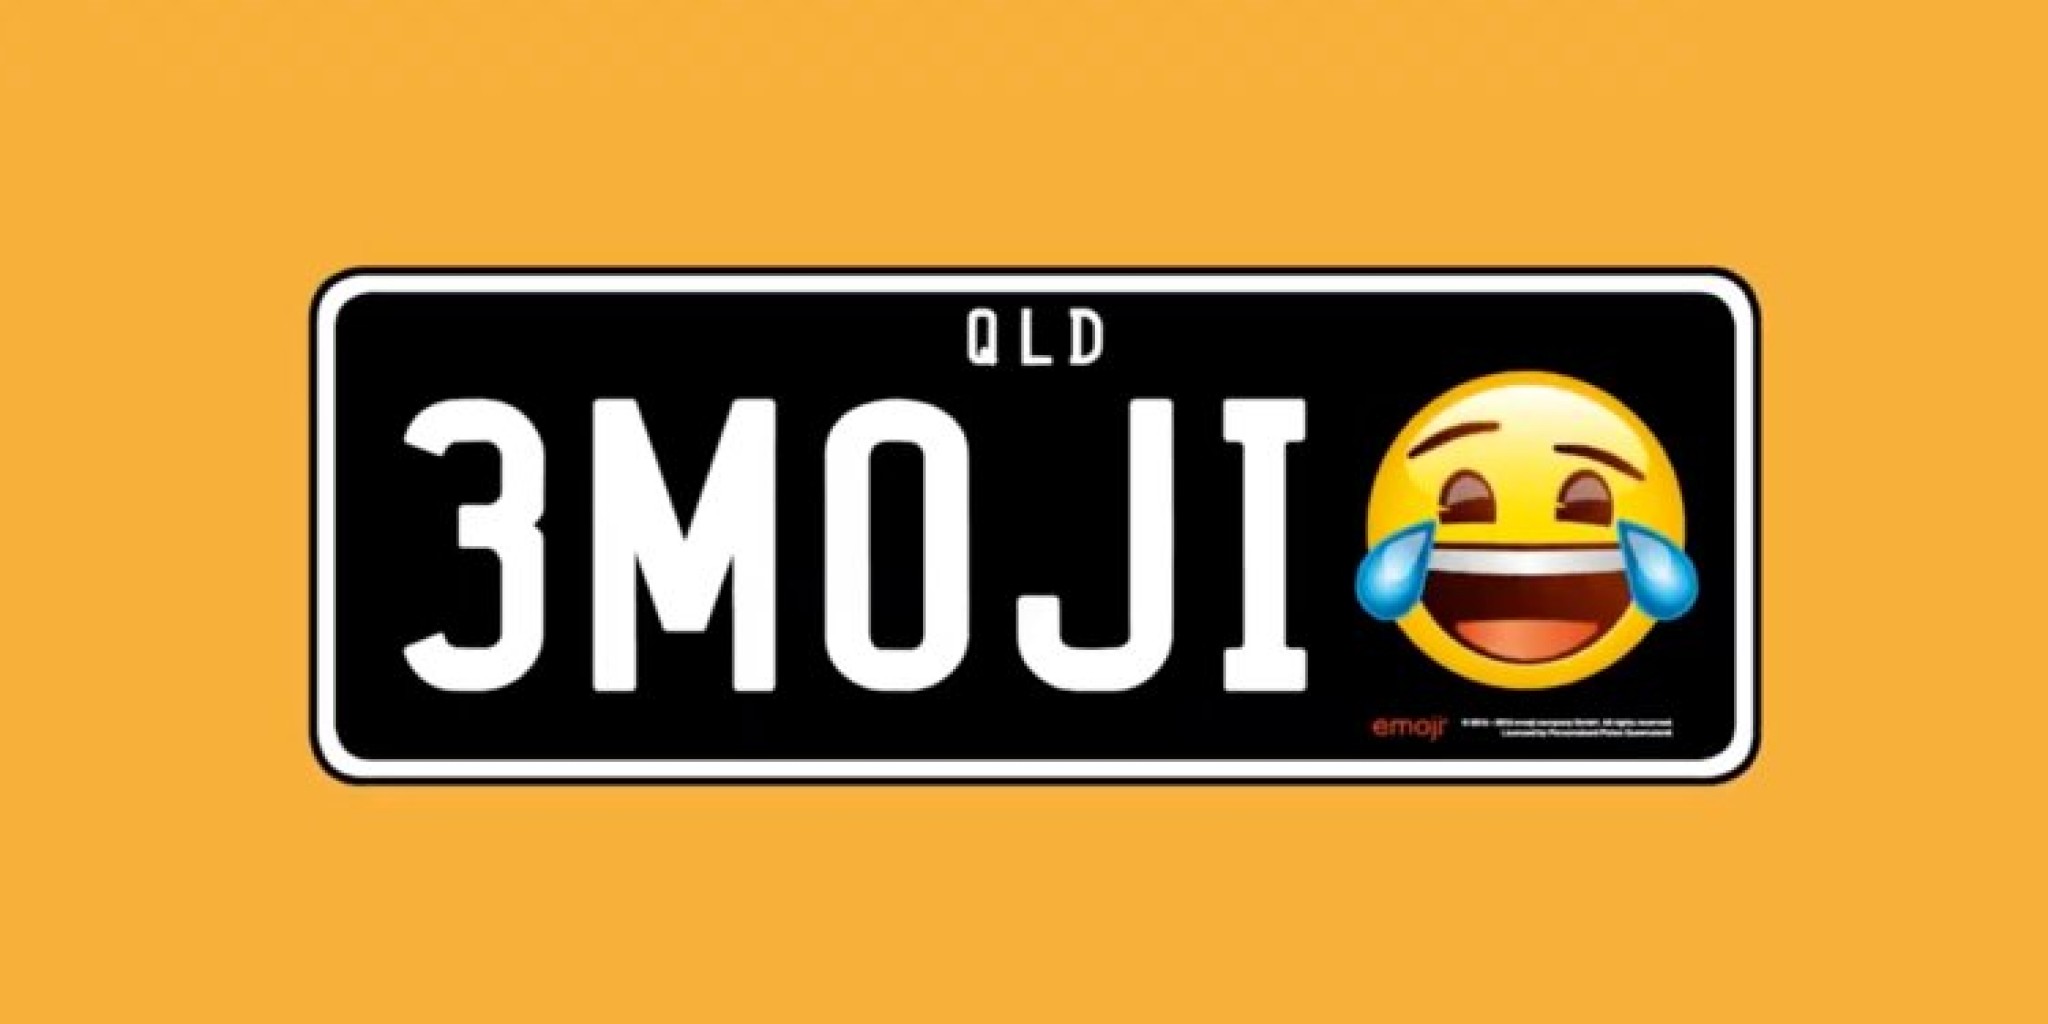 Que país deja usar los "Emojis": en las placas de los automóviles?